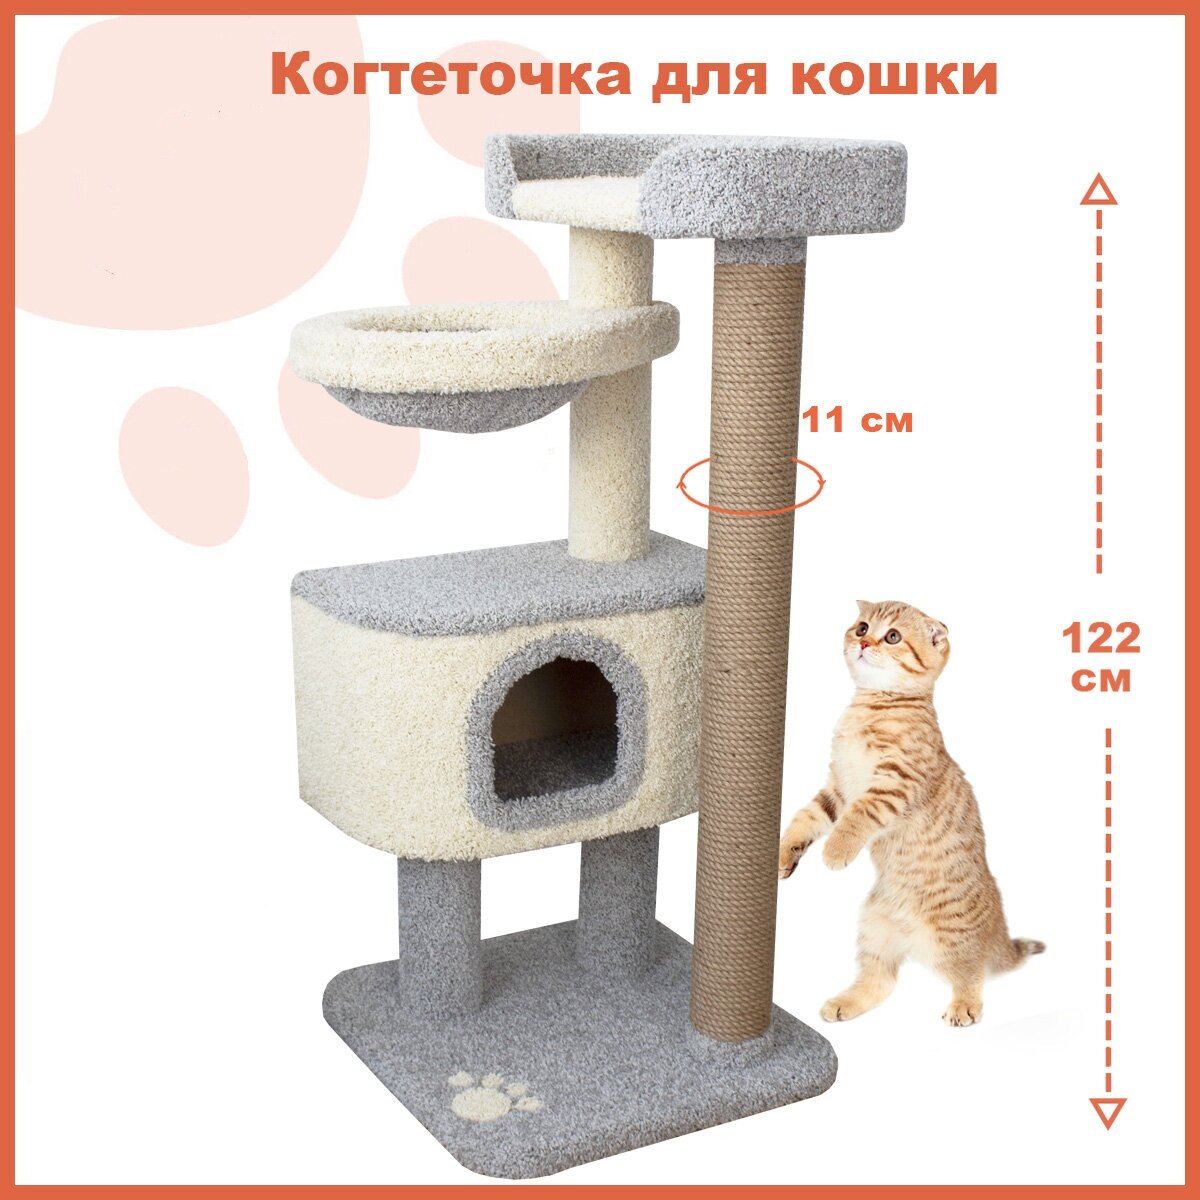 Когтеточка для кошки "Полет" домик и лежанка для животных, серый цвет - фотография № 1